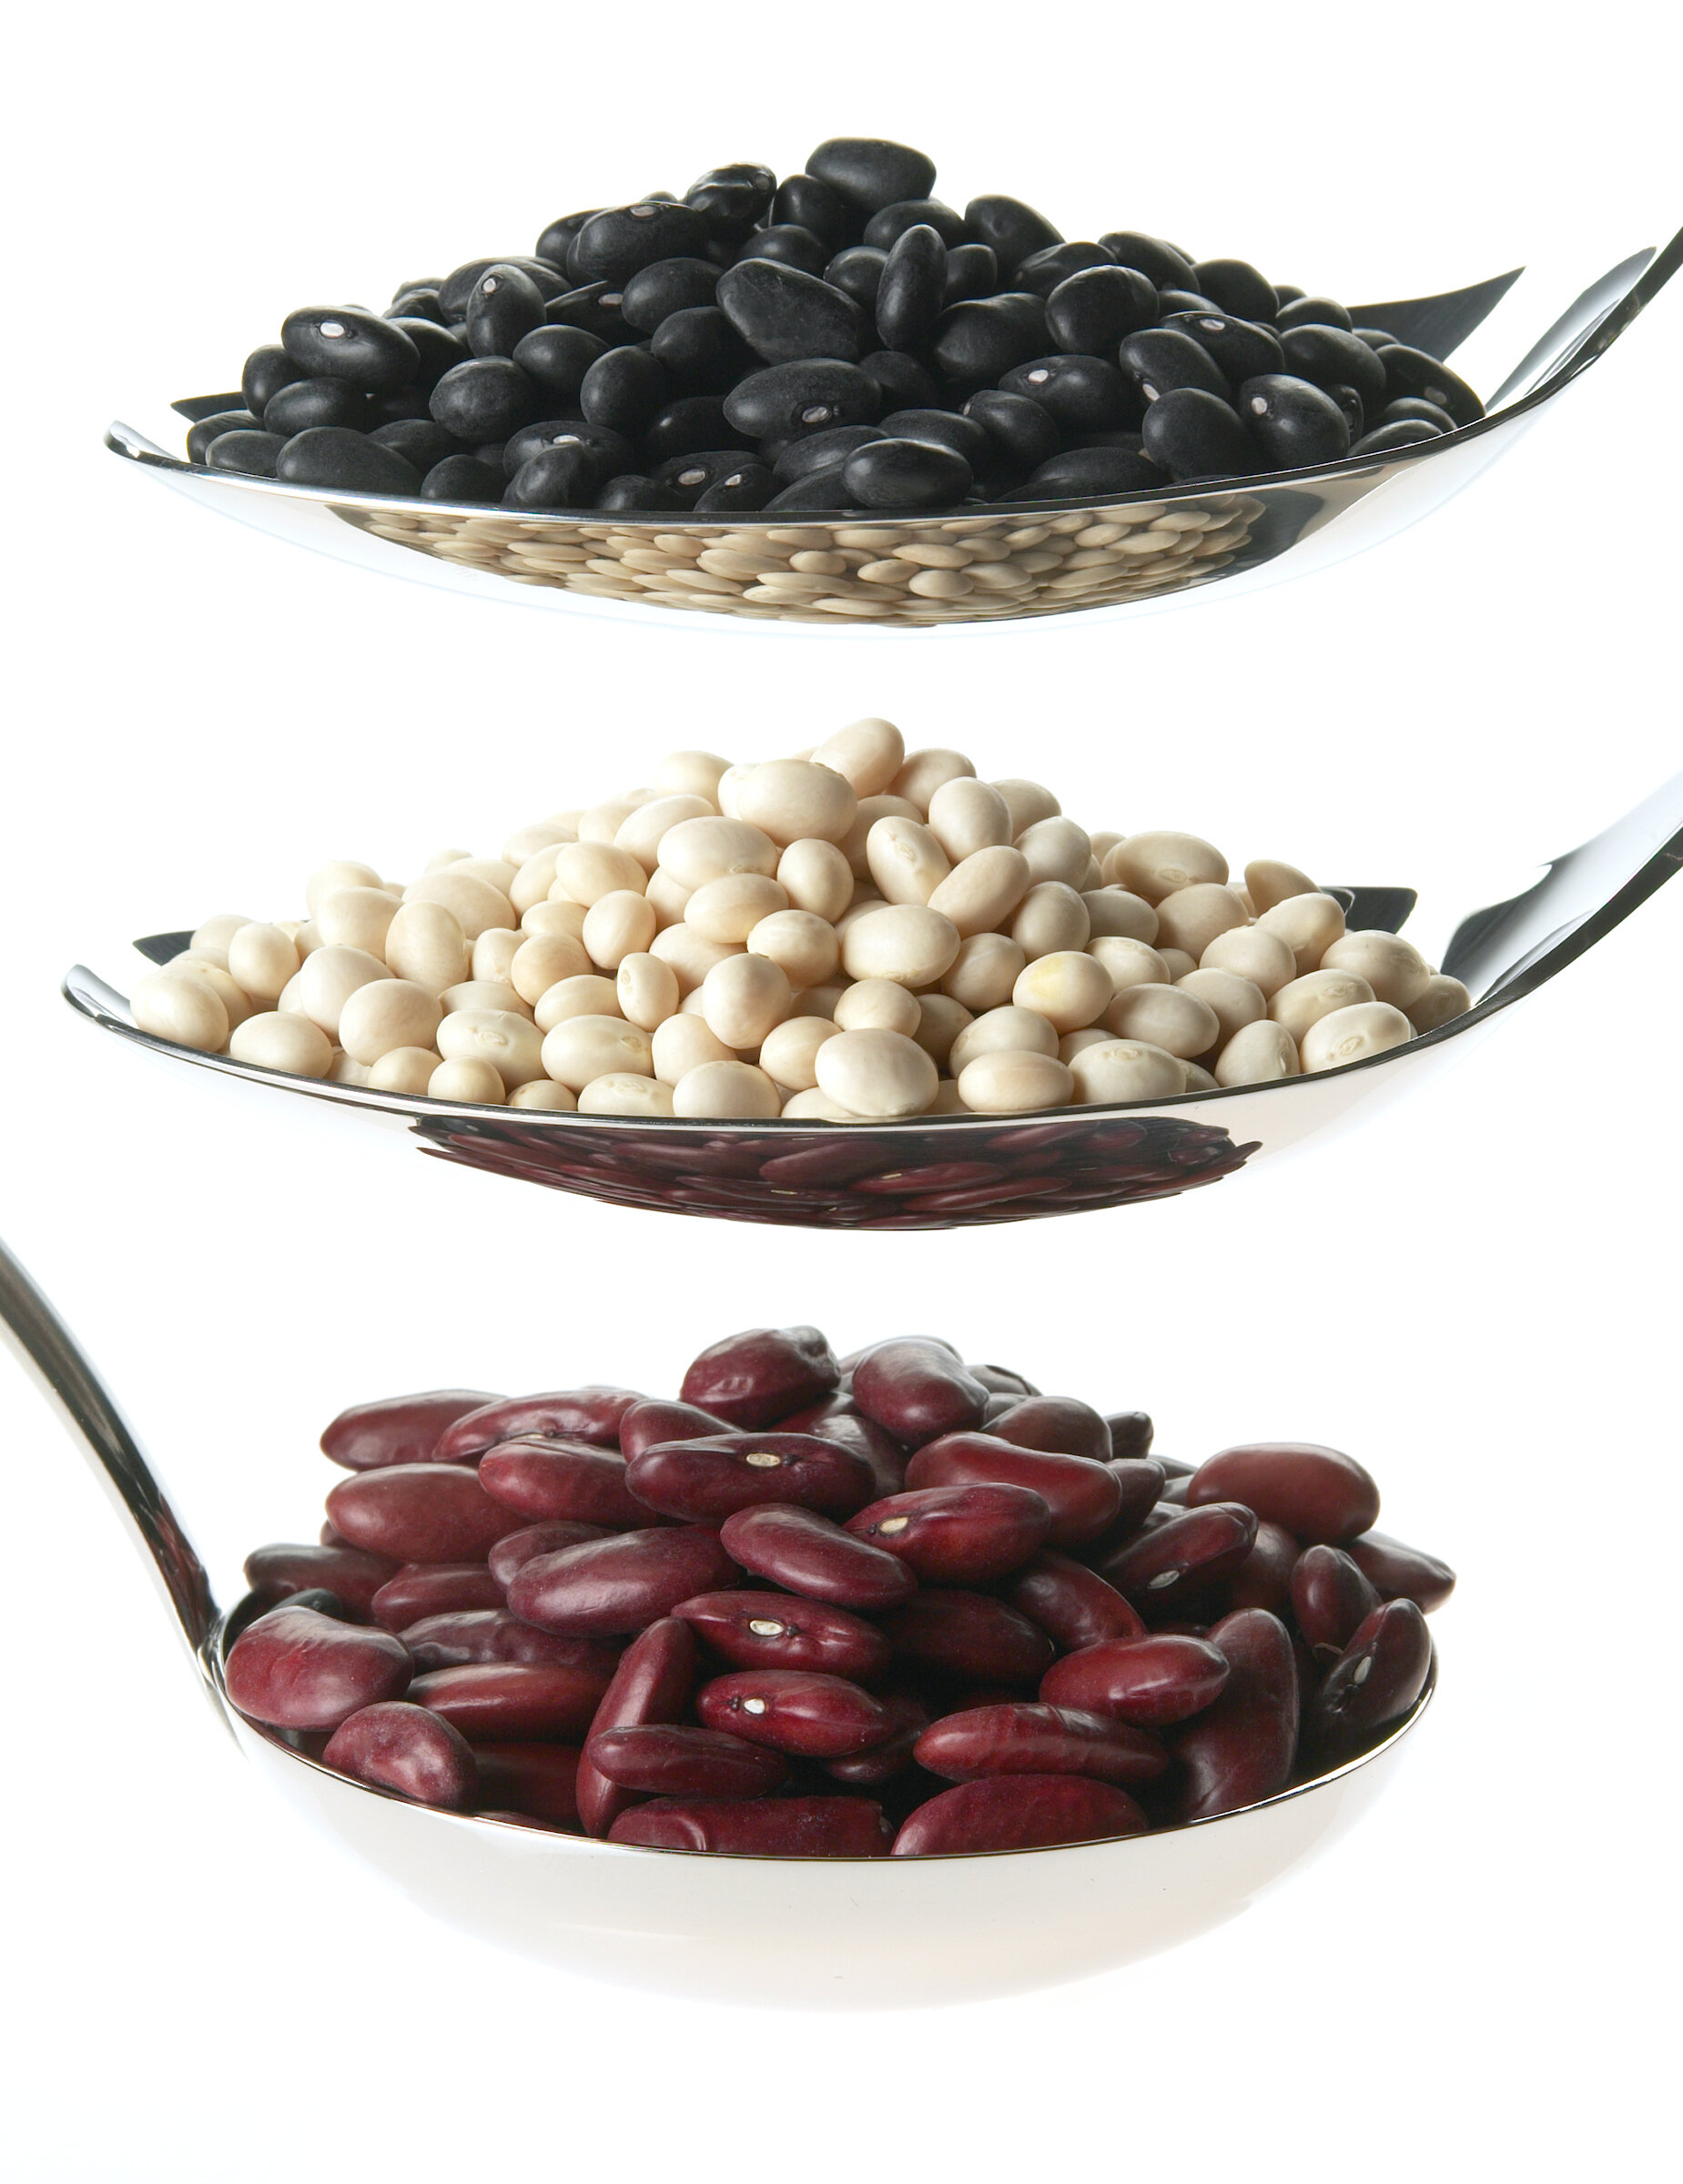 Dried beans.jpg